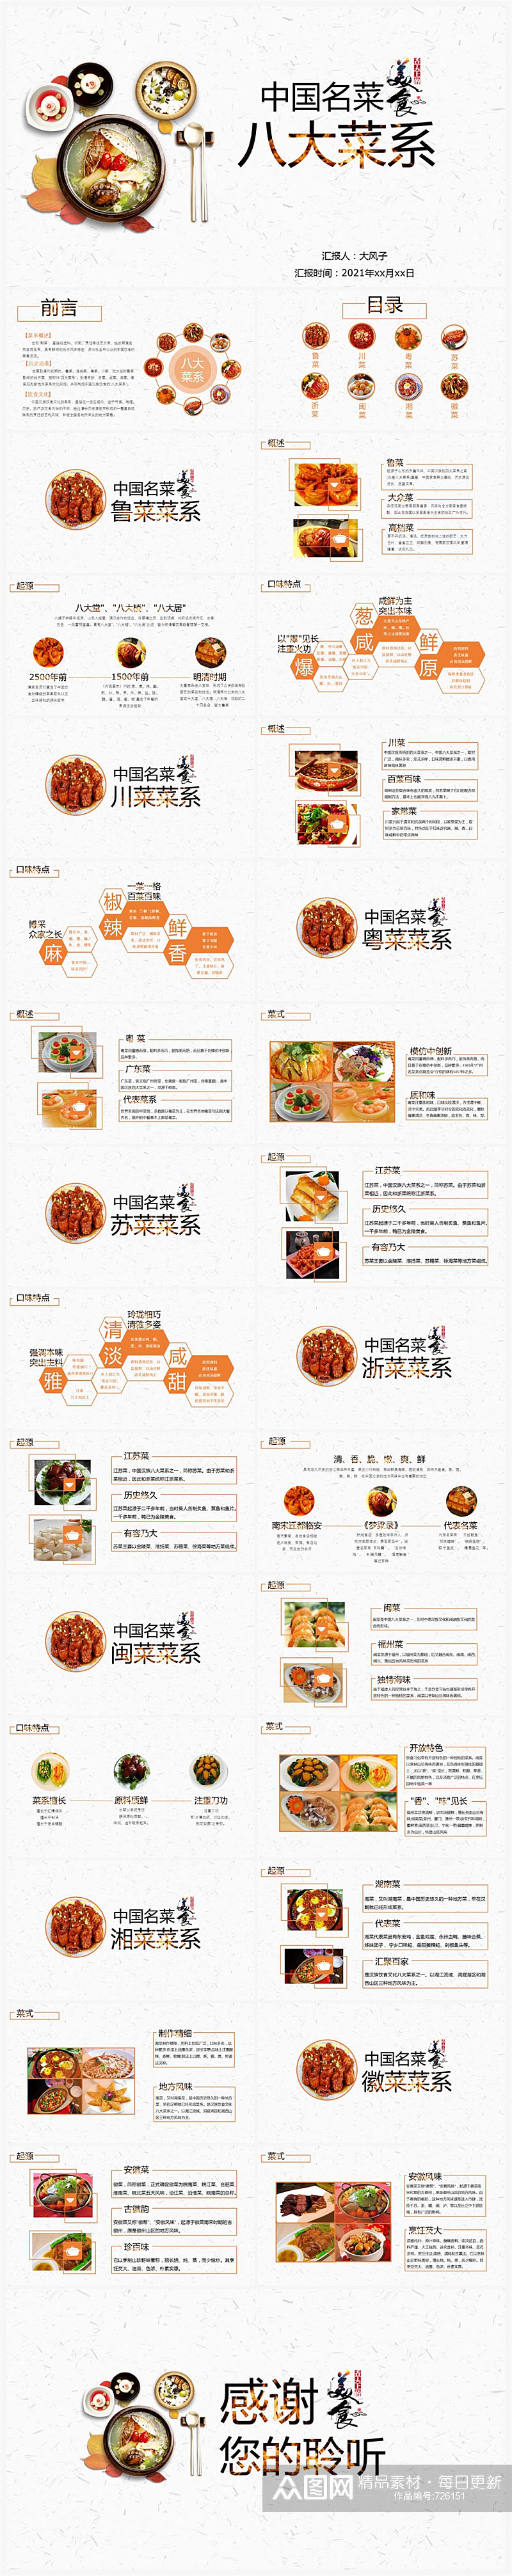 中国名菜八大菜系餐饮美食PPT素材